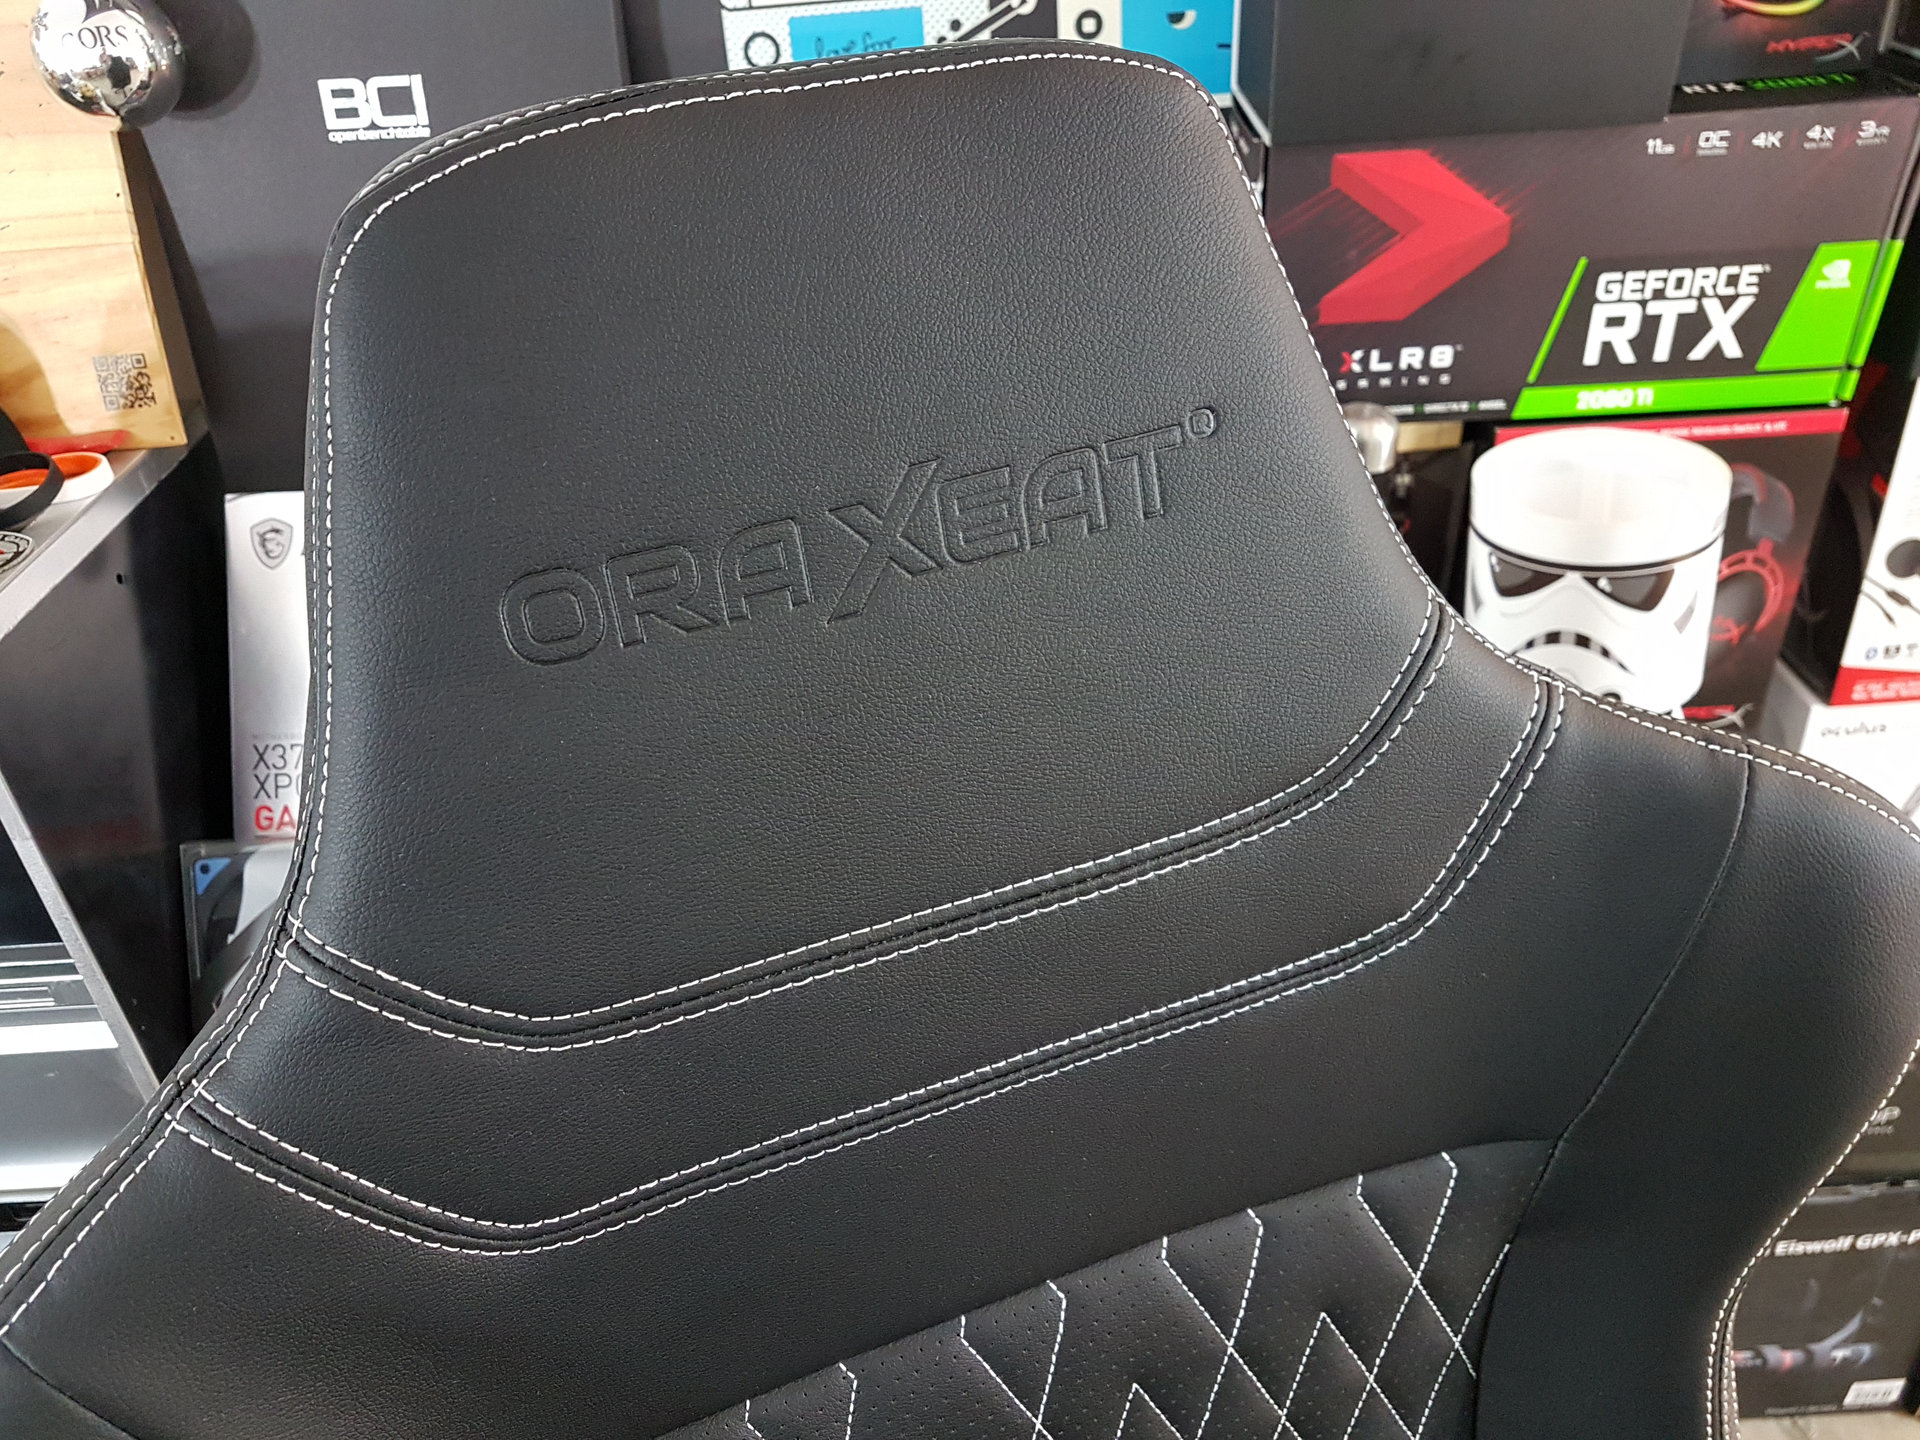 Image 16 : Test : Oraxeat XL800, enfin un fauteuil gaming pour les grands joueurs